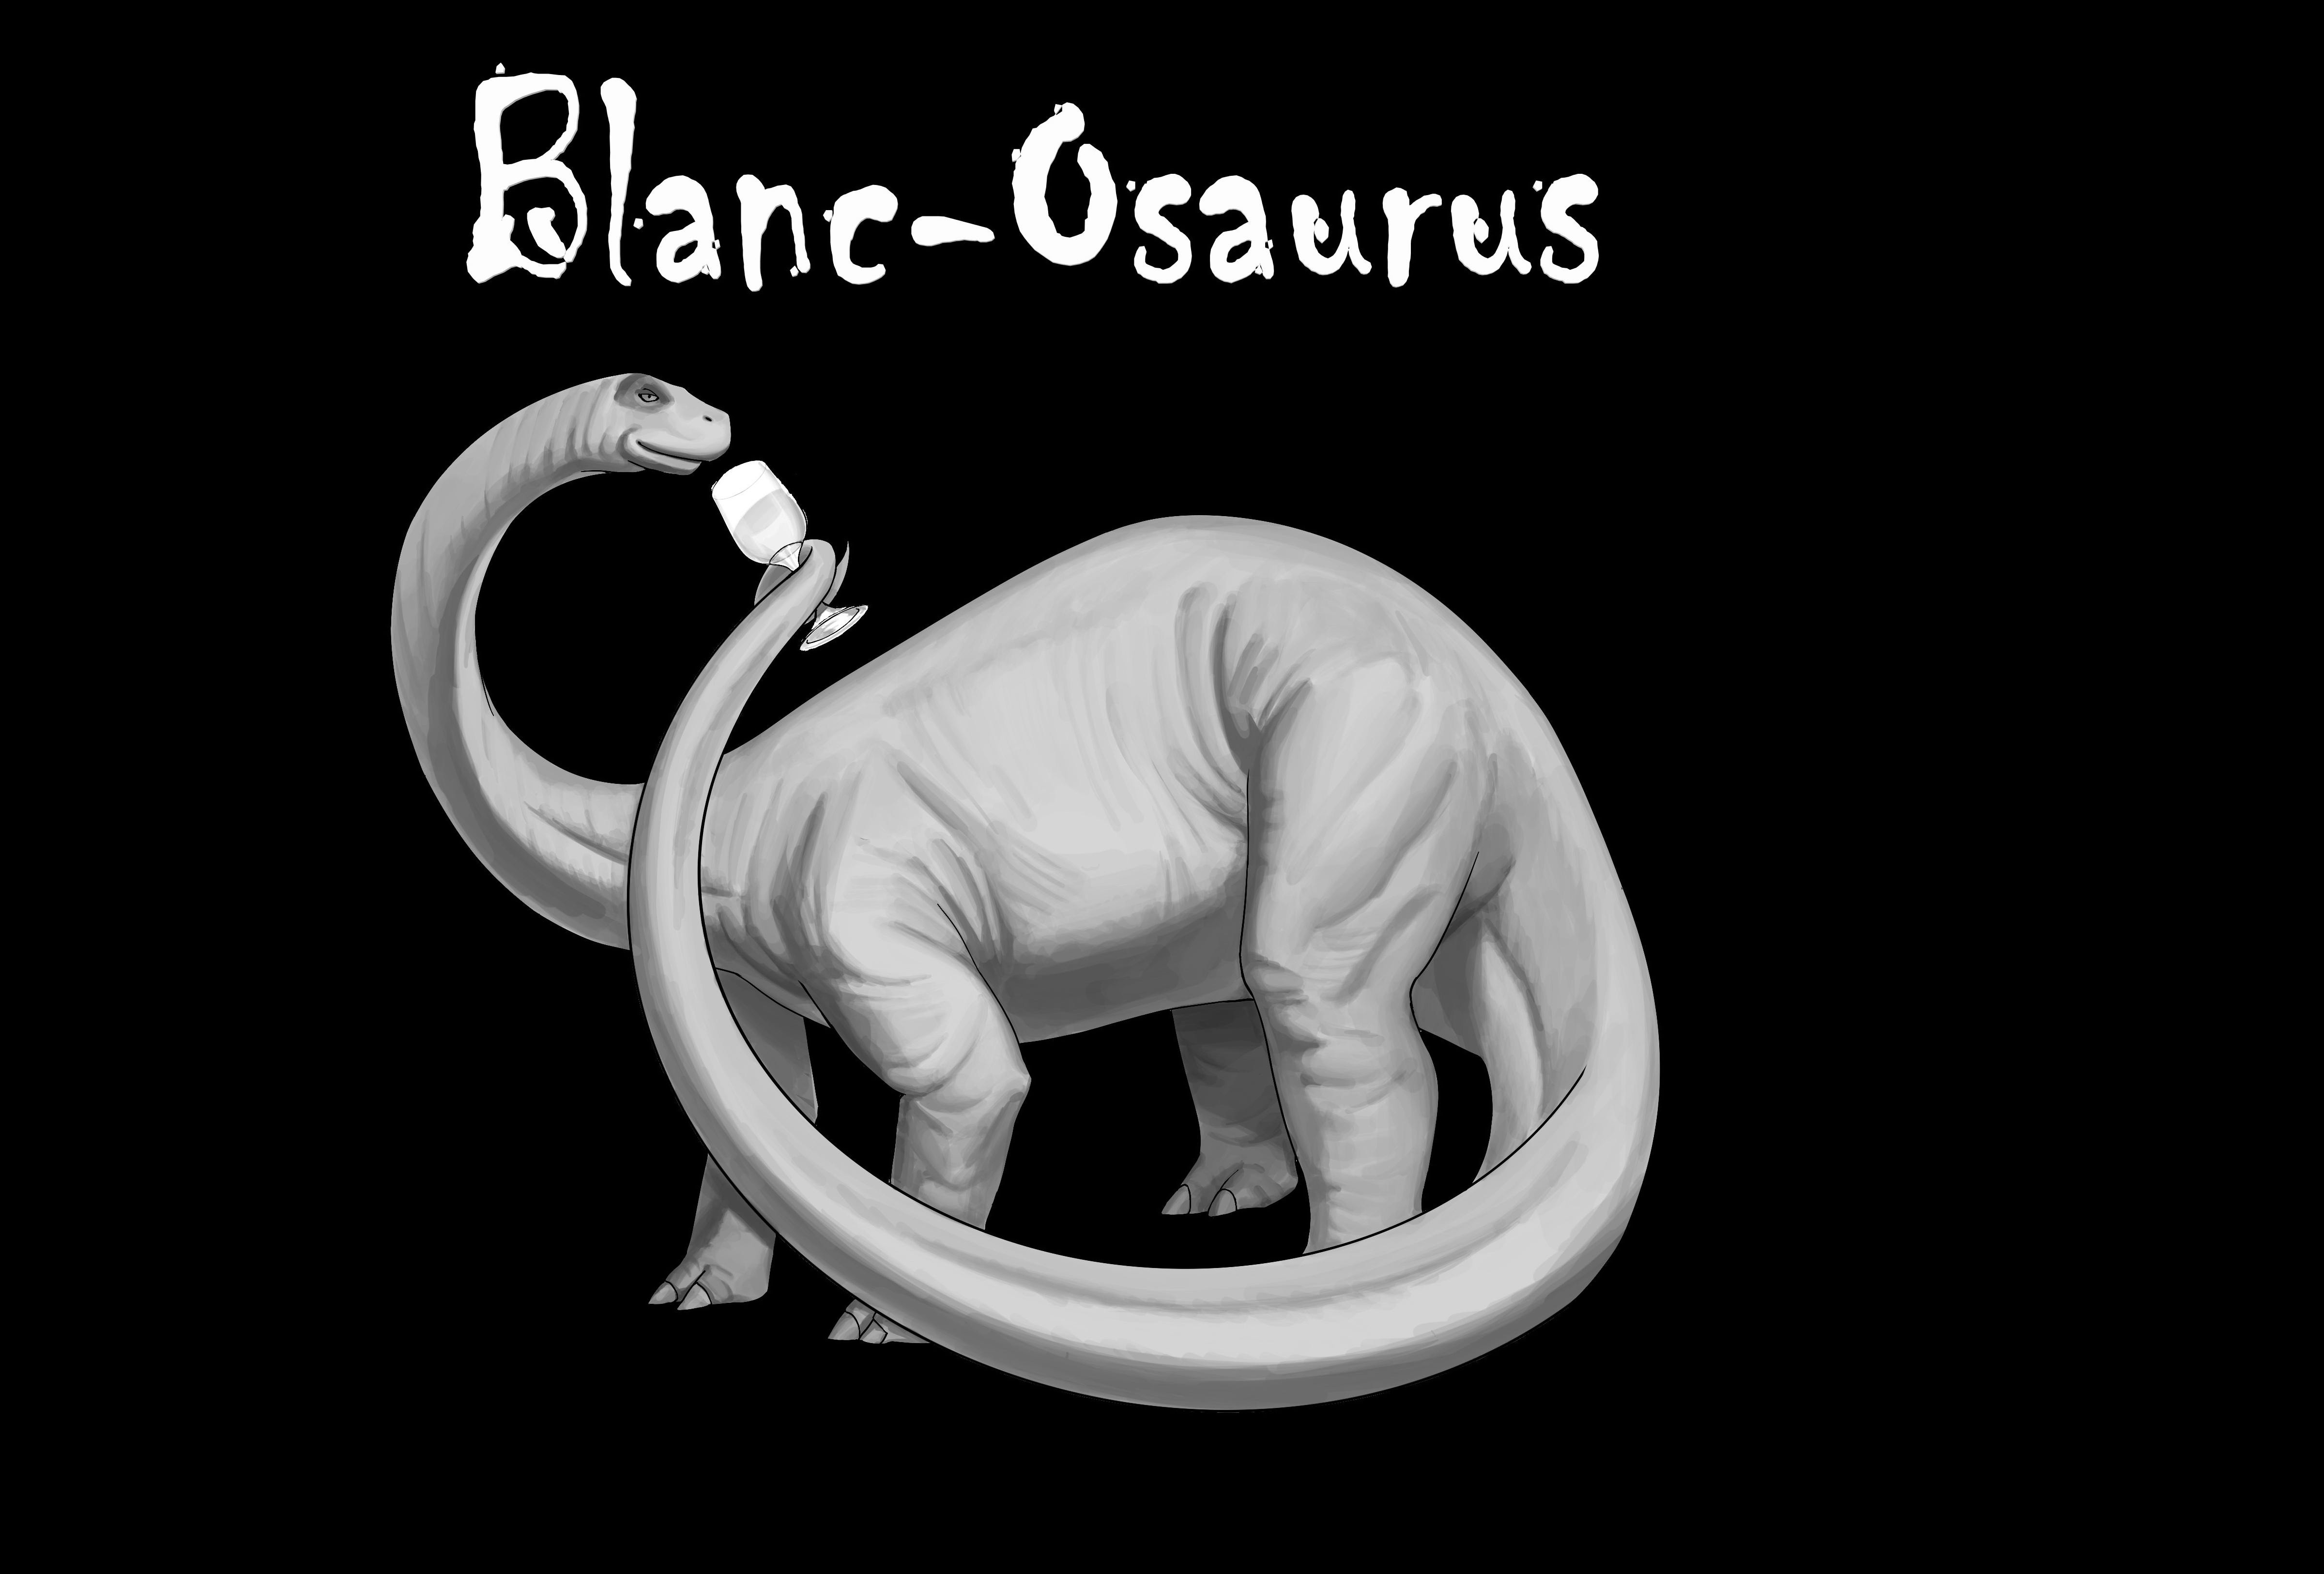  BLANC-OSAURUS